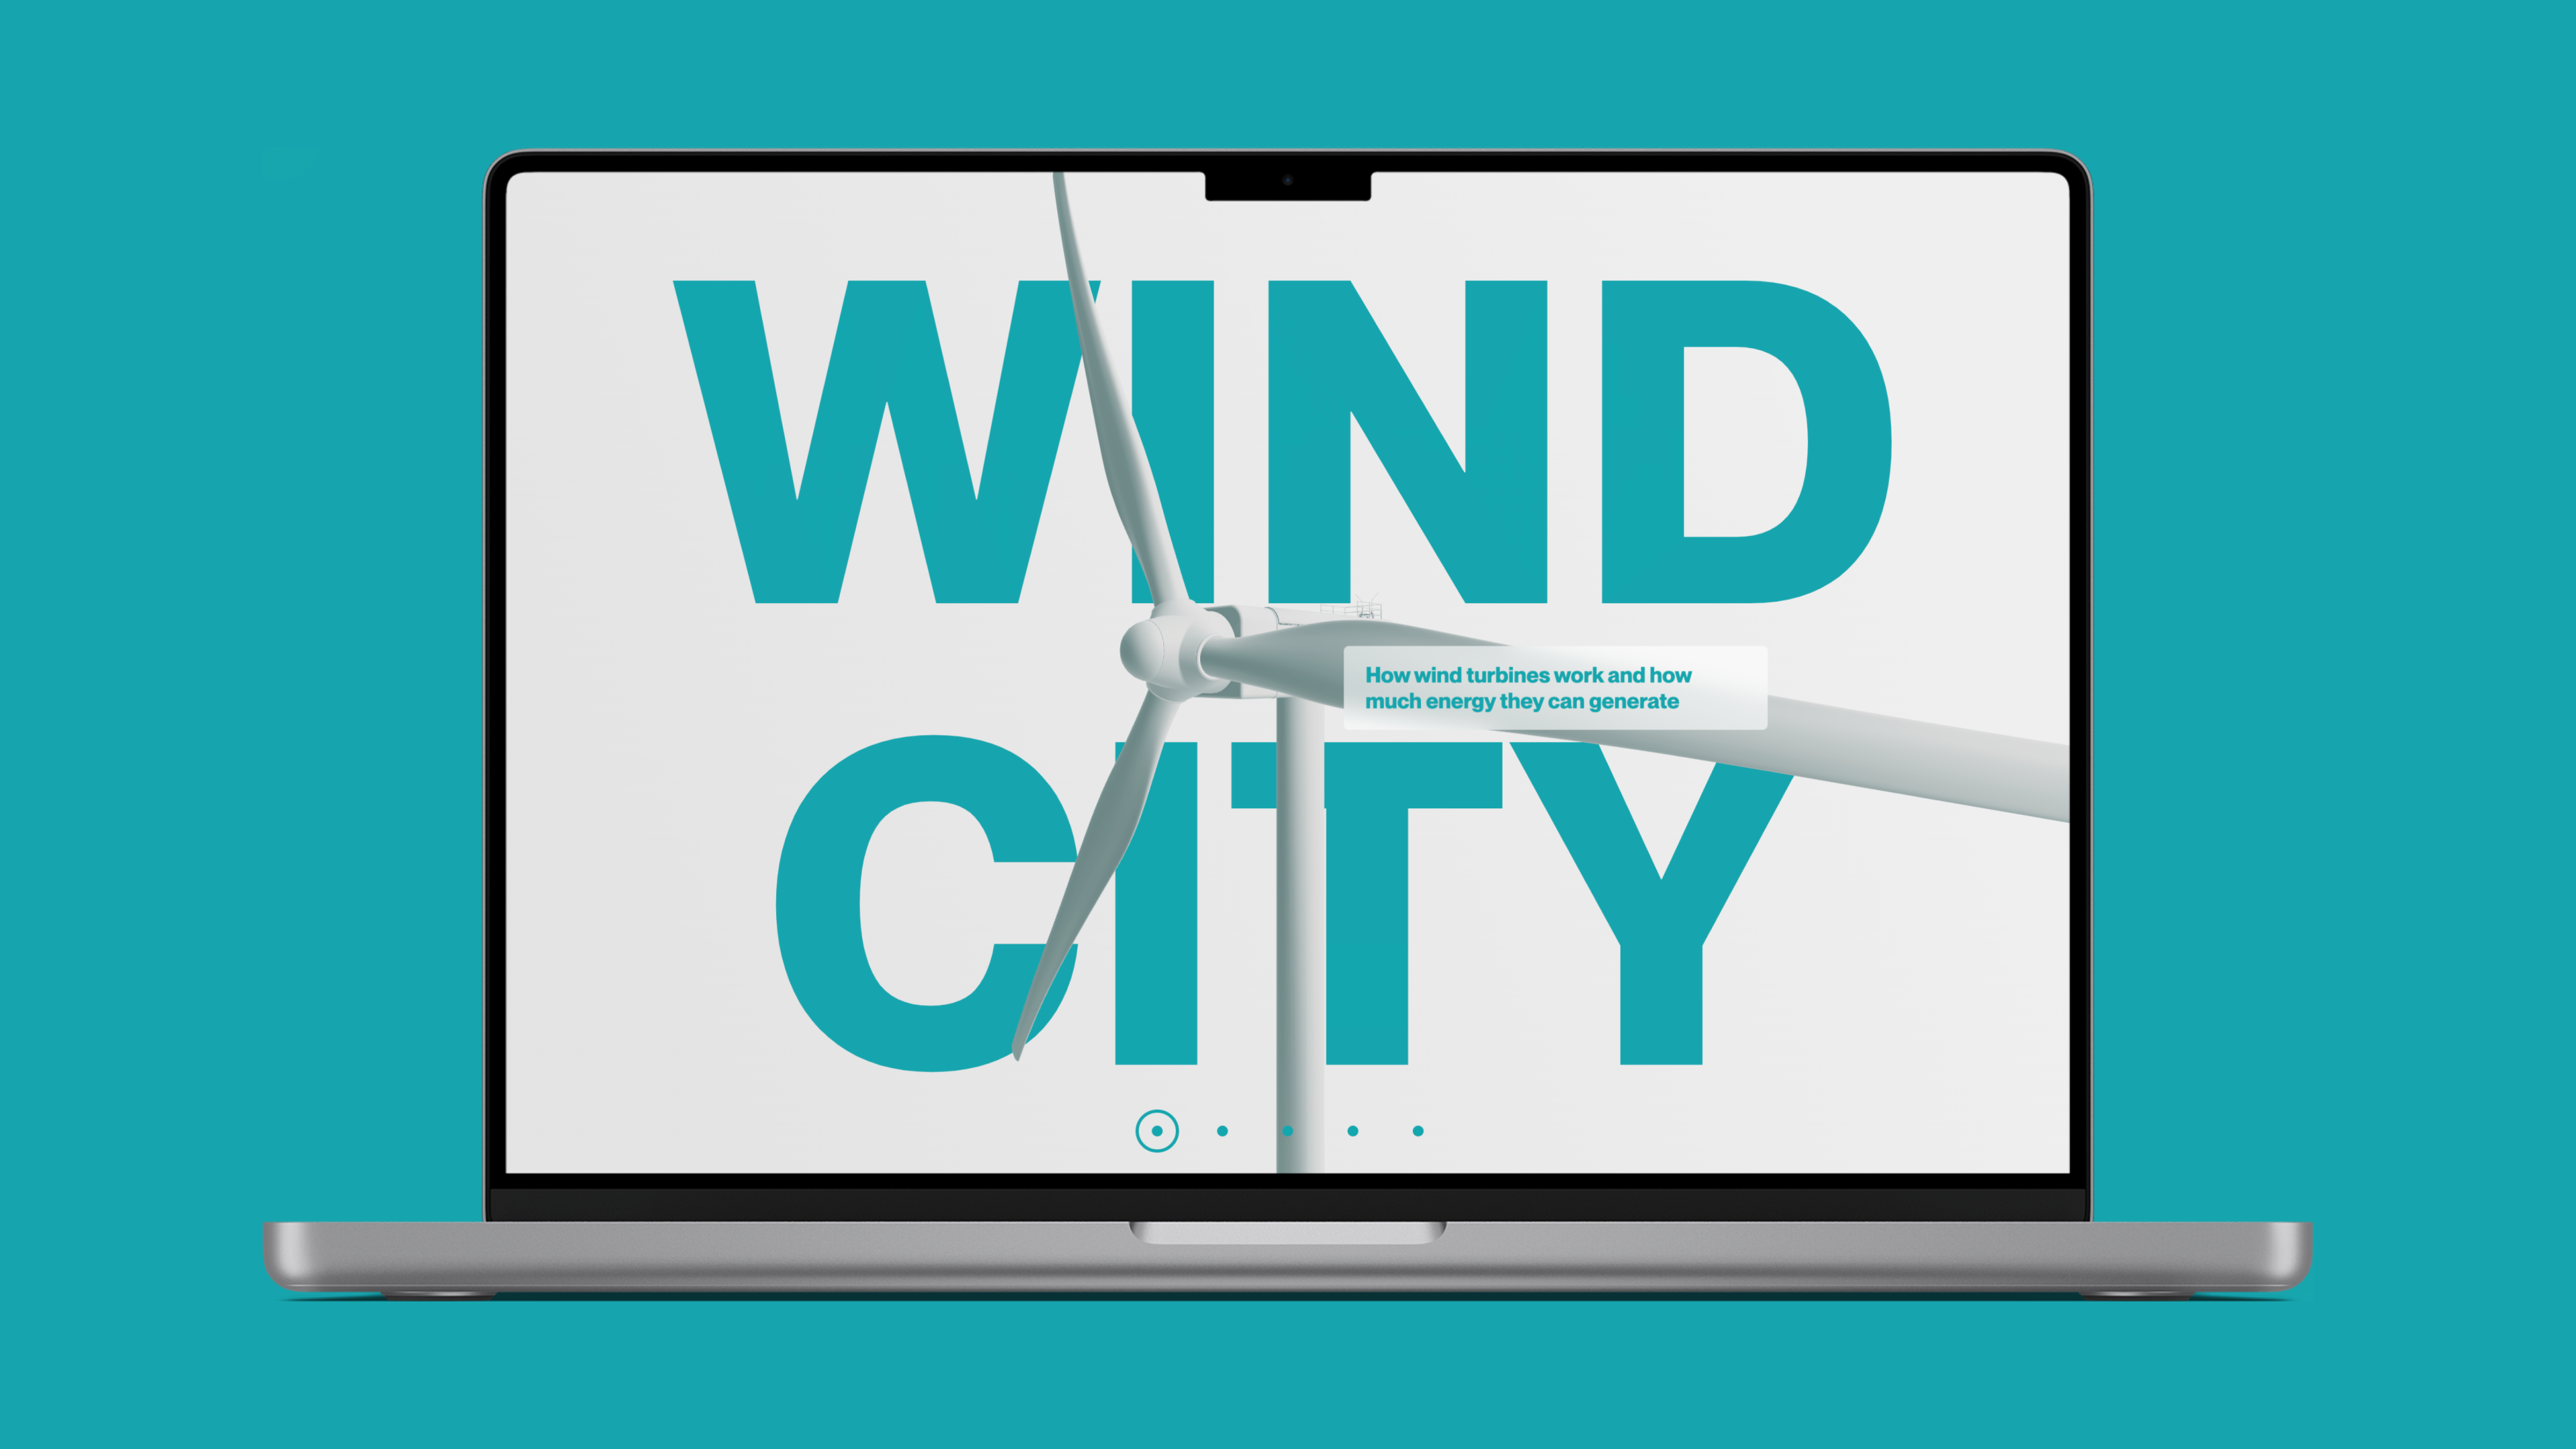 Die Website "WIND CITY" enthält ein interaktives 3D-Windradmodell. Während die Nutzer durch die Website navigieren, reagiert die Turbine in Echtzeit auf die Bewegungen des Cursors.